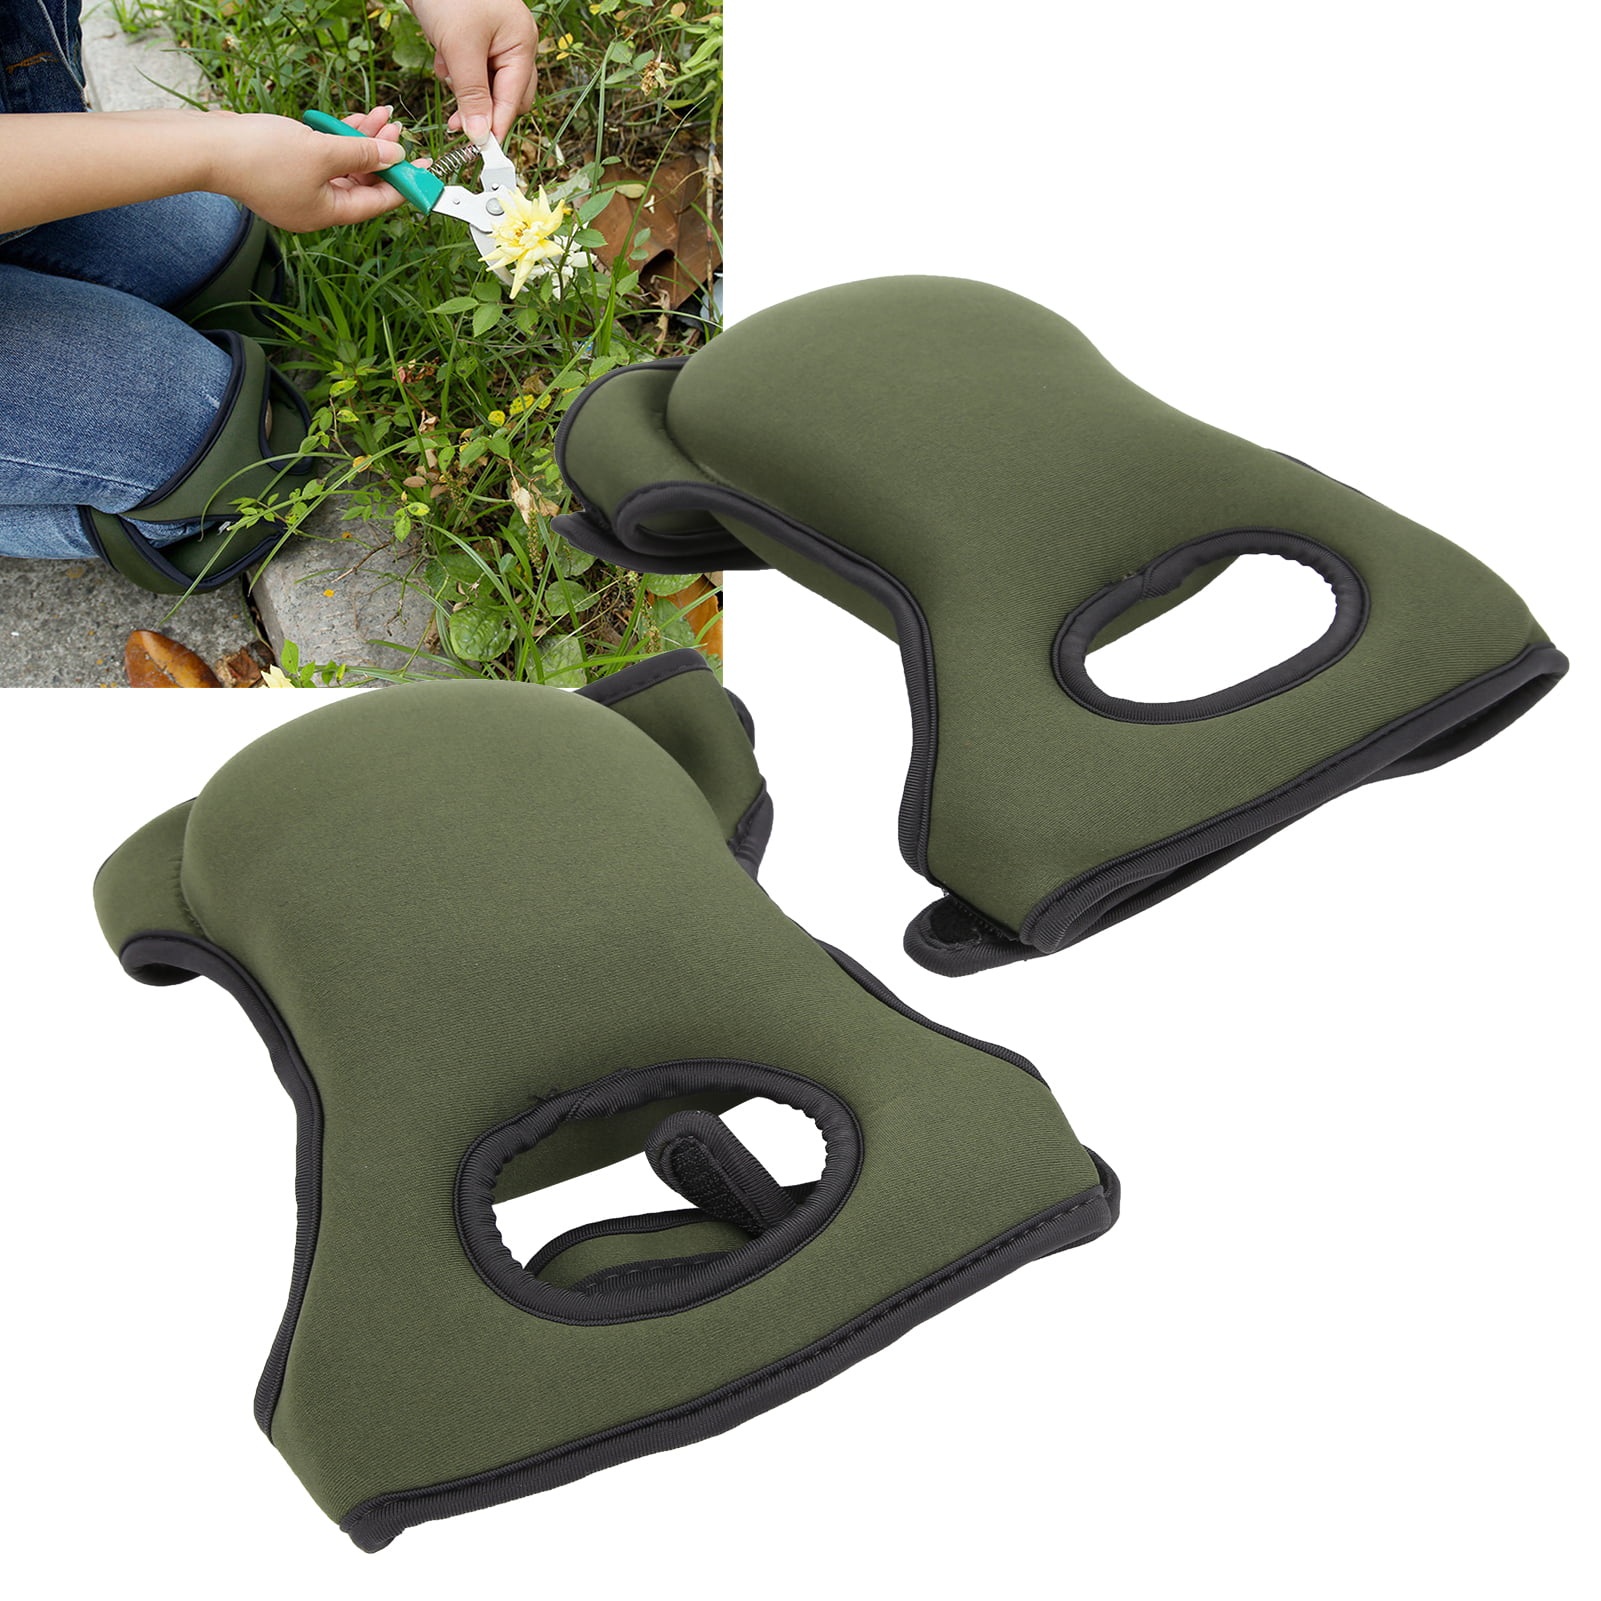 GARDEN KNEE PADS  Green   5.9" X 5.1" Soft Cushion Comfort 